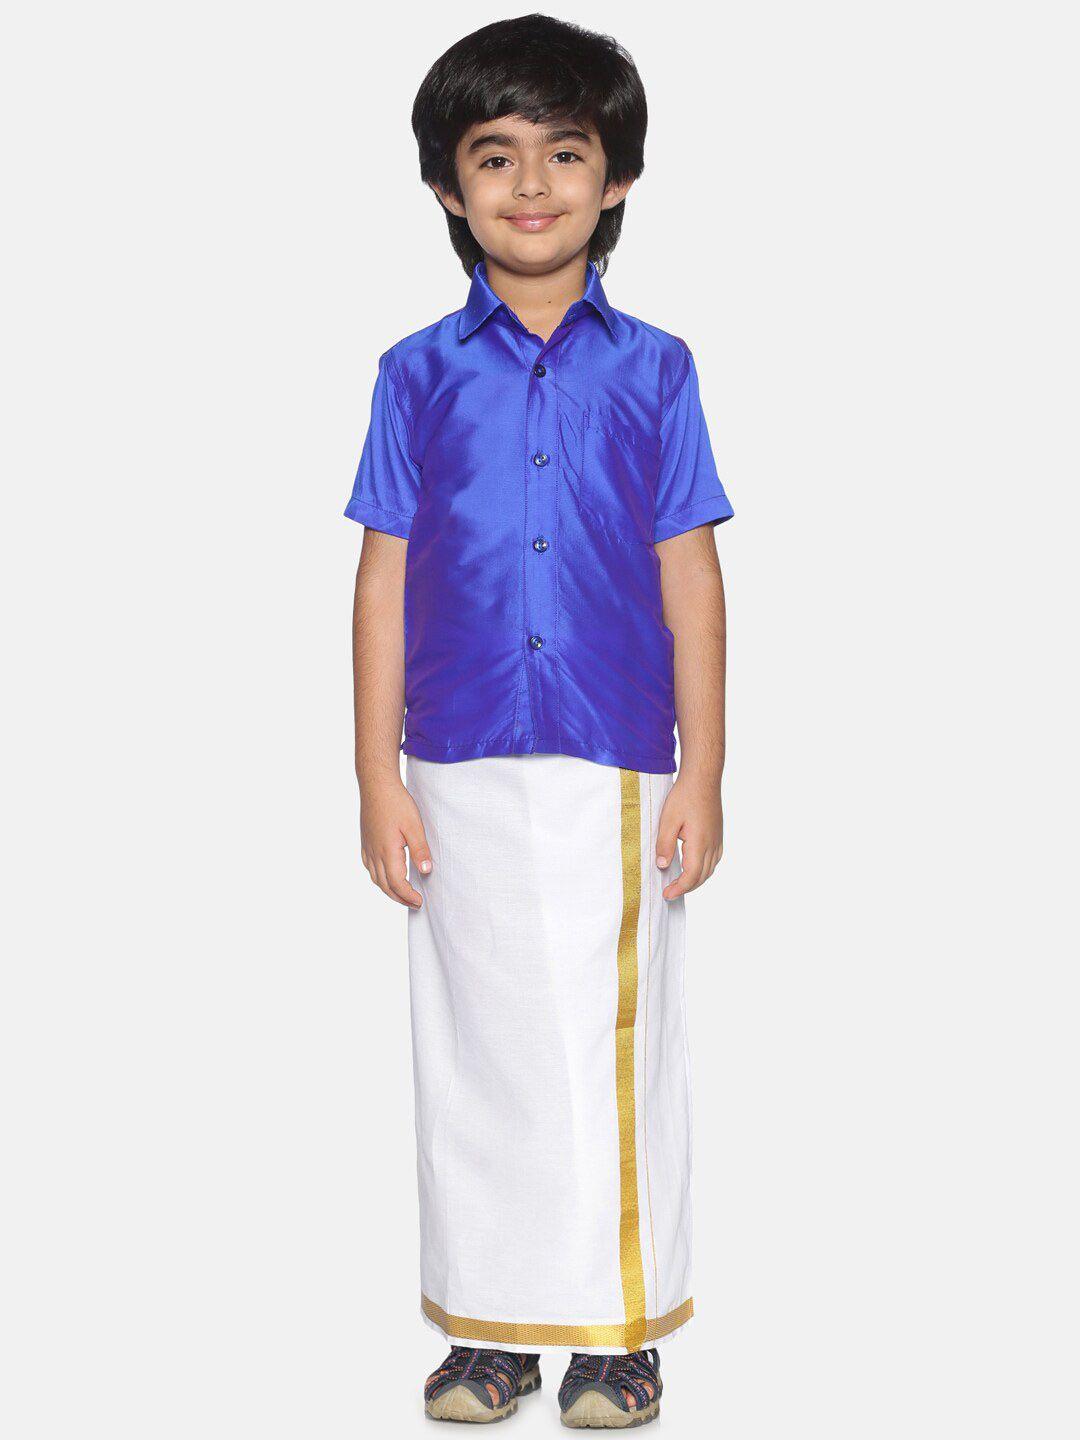 sethukrishna boys blue & white shirt with dhoti pants